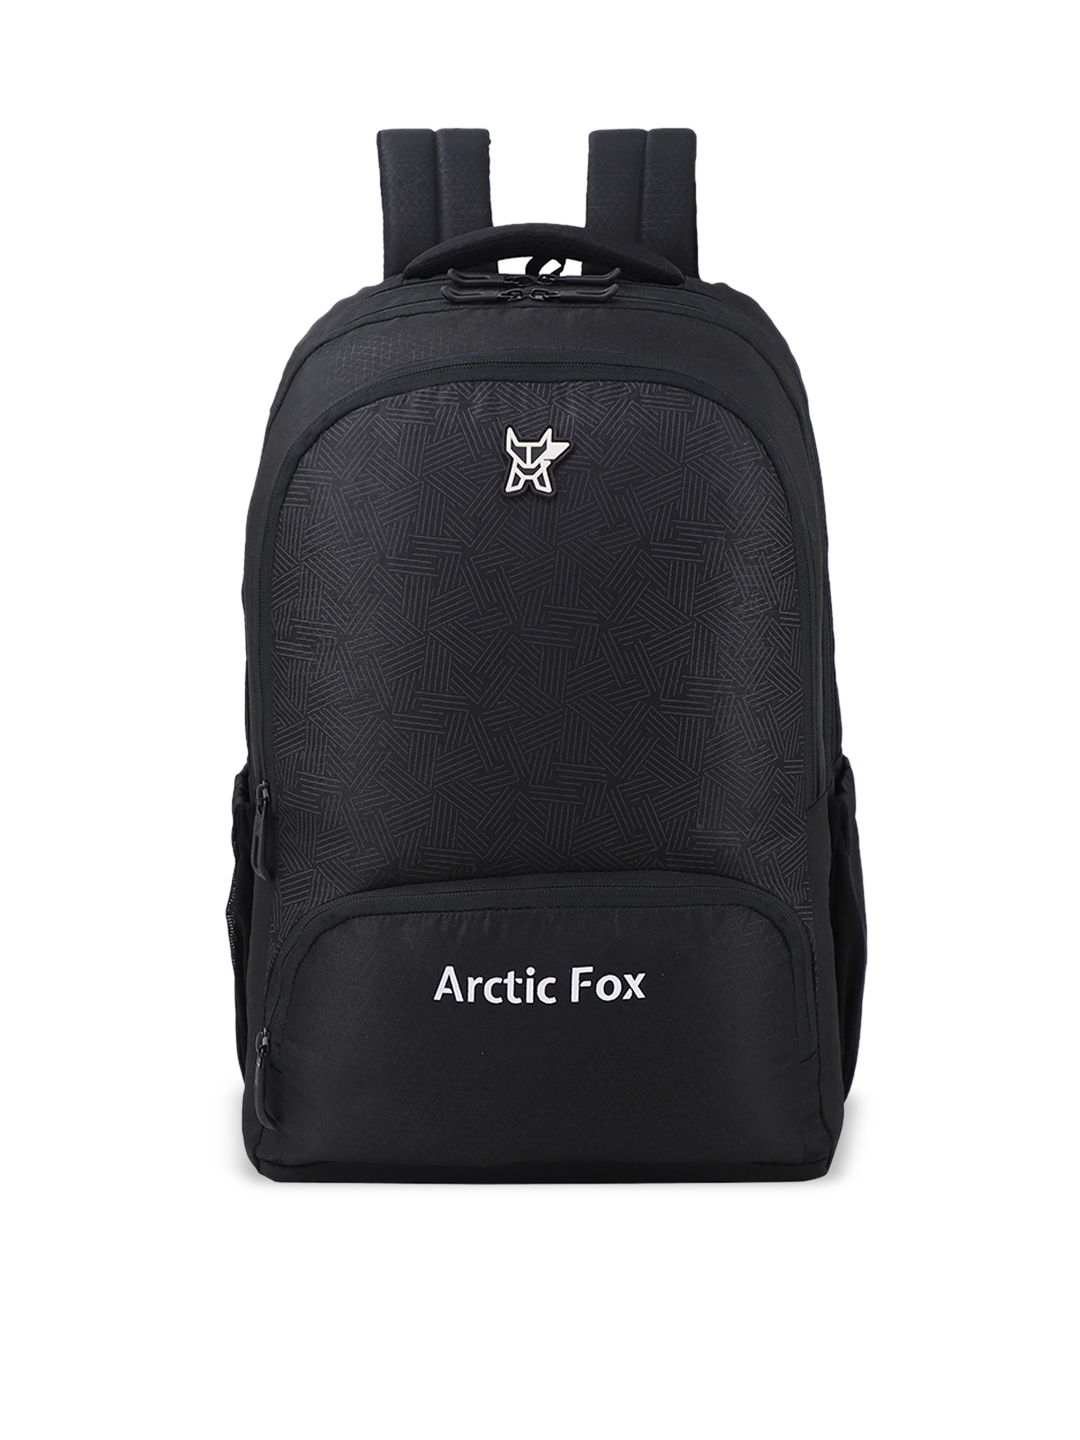 Arctic Fox Unisex Black Backpacks Price in India